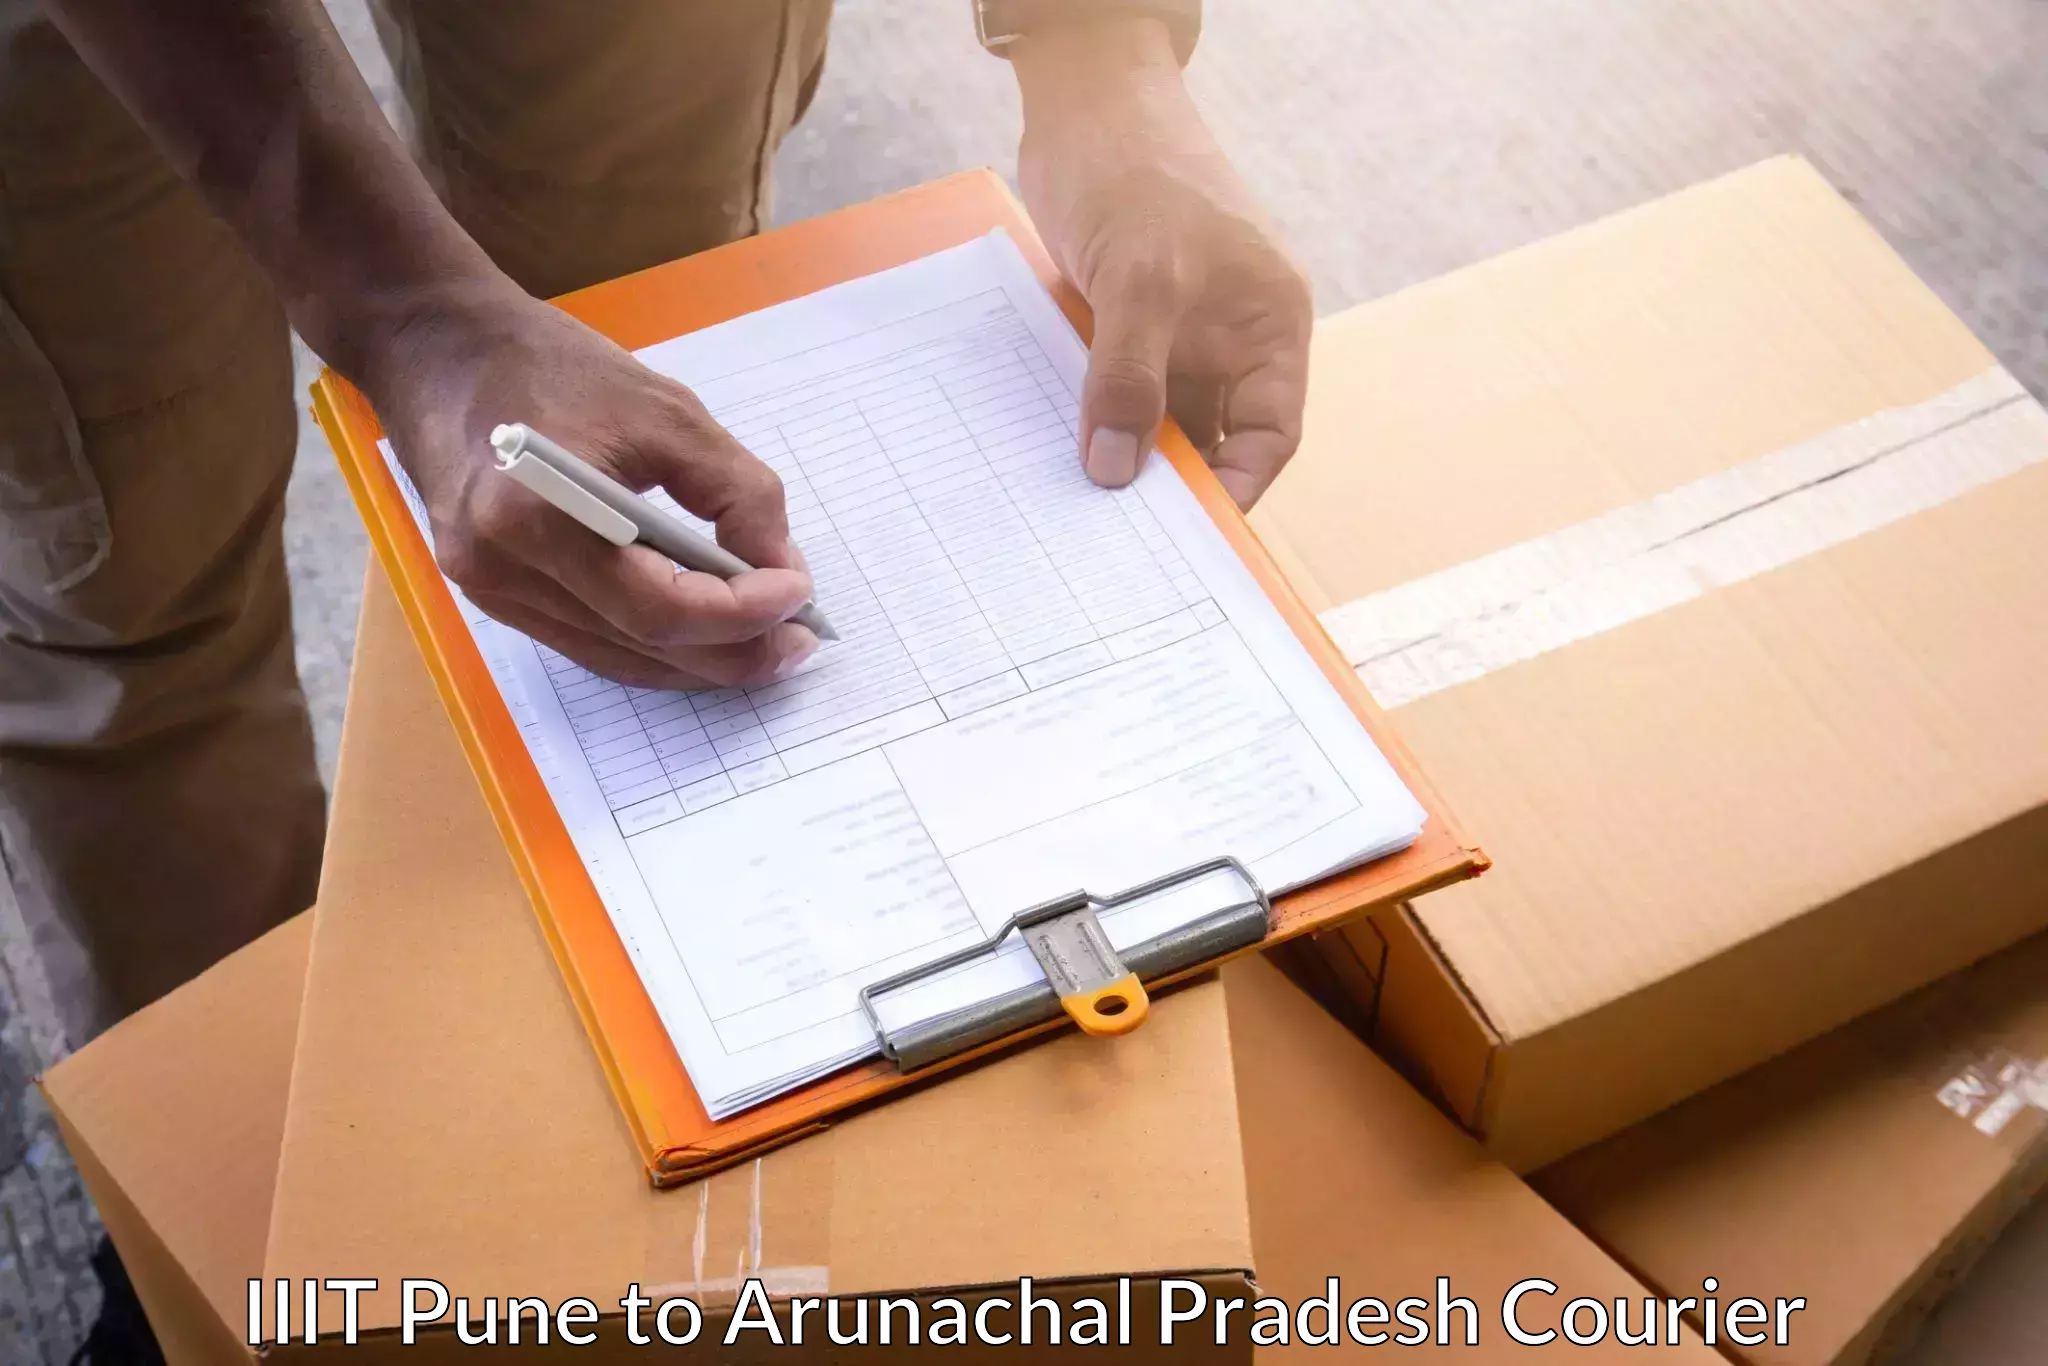 Ground shipping IIIT Pune to Khonsa